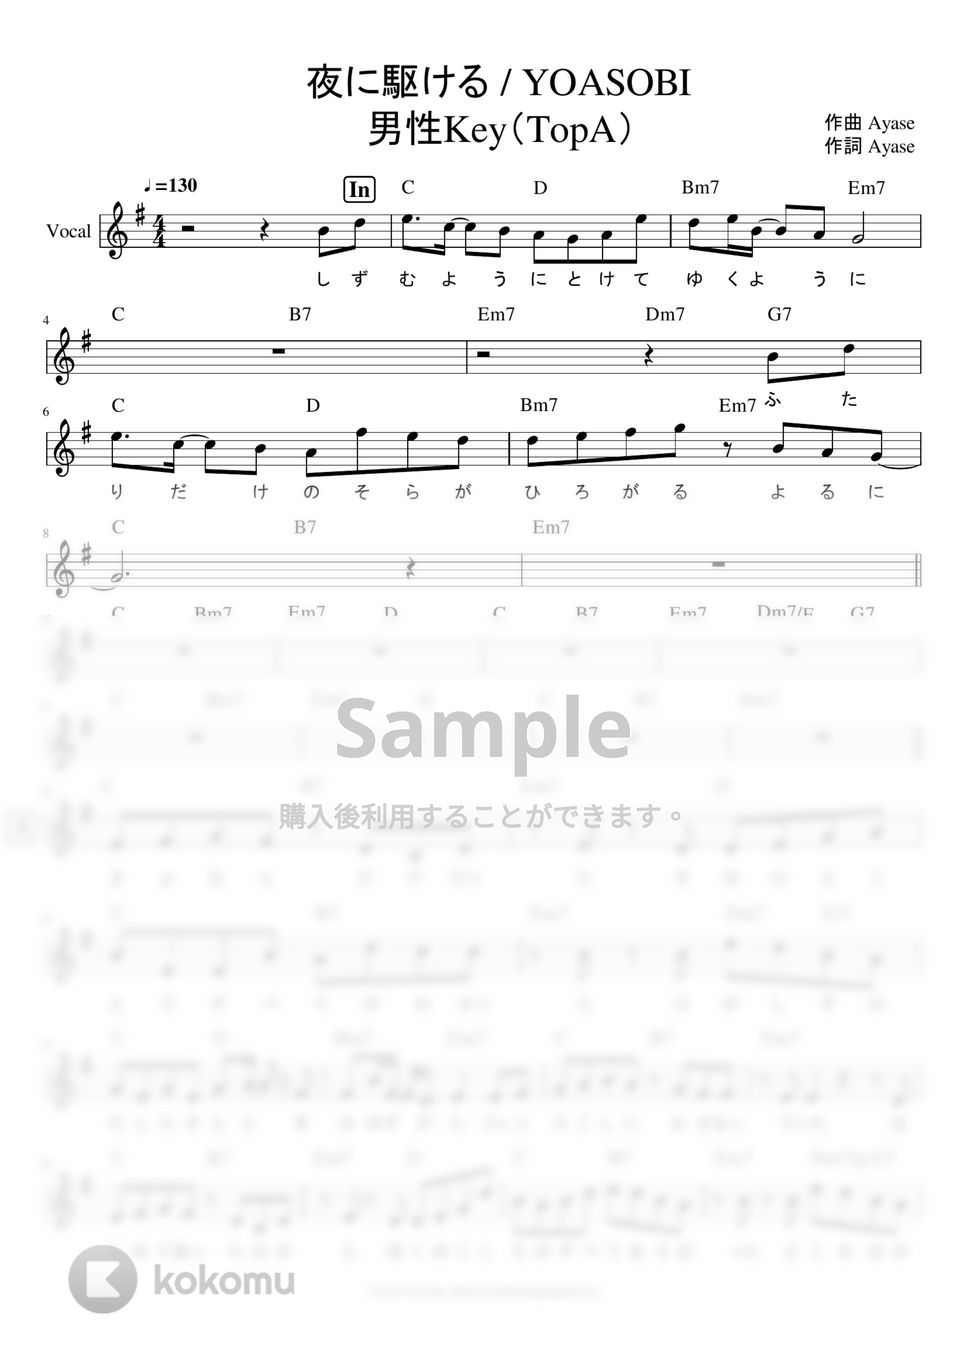 YOASOBI - 「夜に駆ける」 リードシート※男声アレンジ (男声キーに編曲したサイズ譜です。) by ましまし